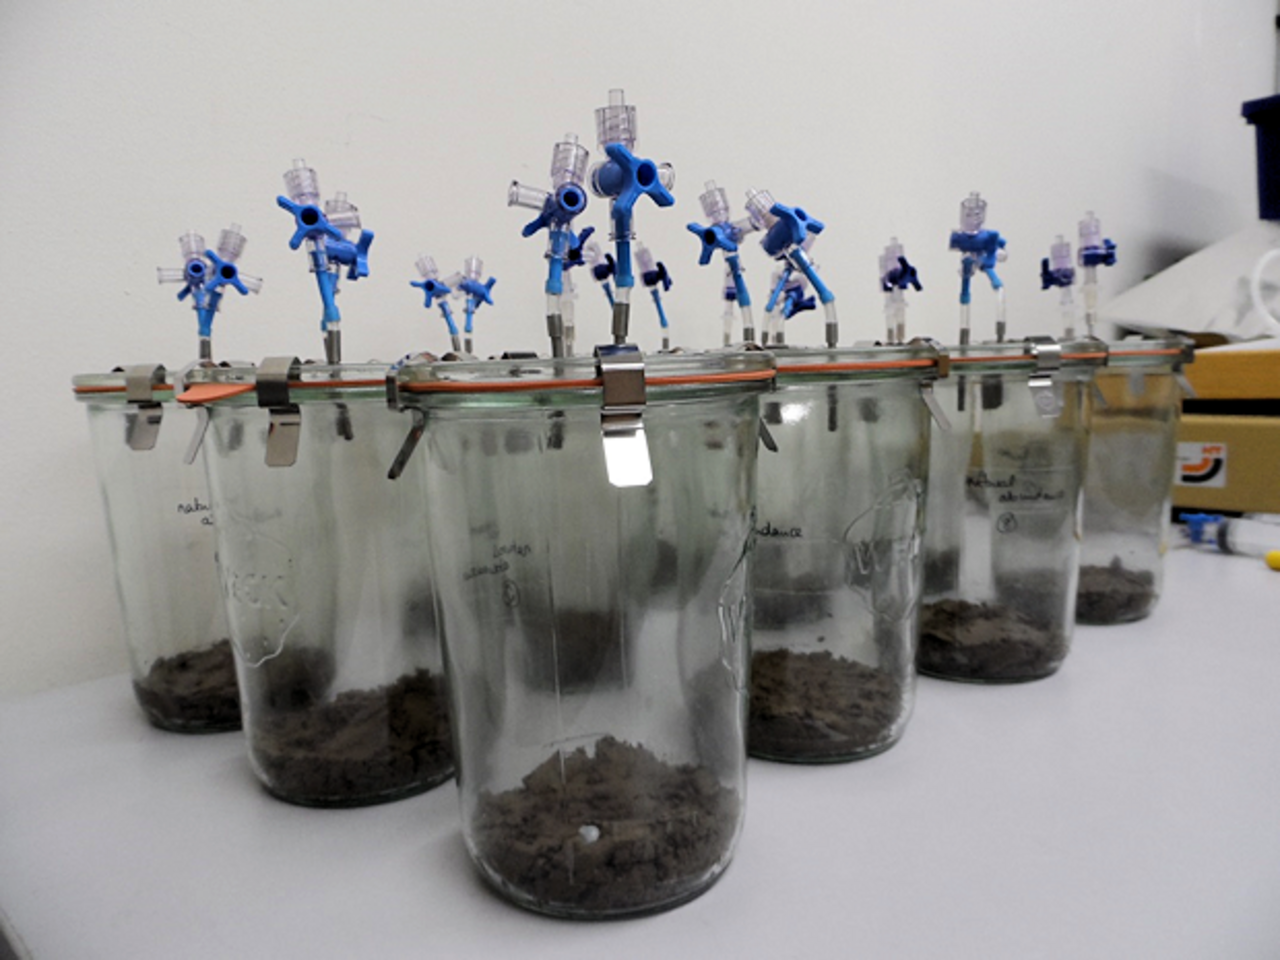 Anaerobe Bodeninkubationen mit Wachstumshemmstoffen für Bakterien und Pilze zur Untersuchung der N2O-Produktion durch Pilze.